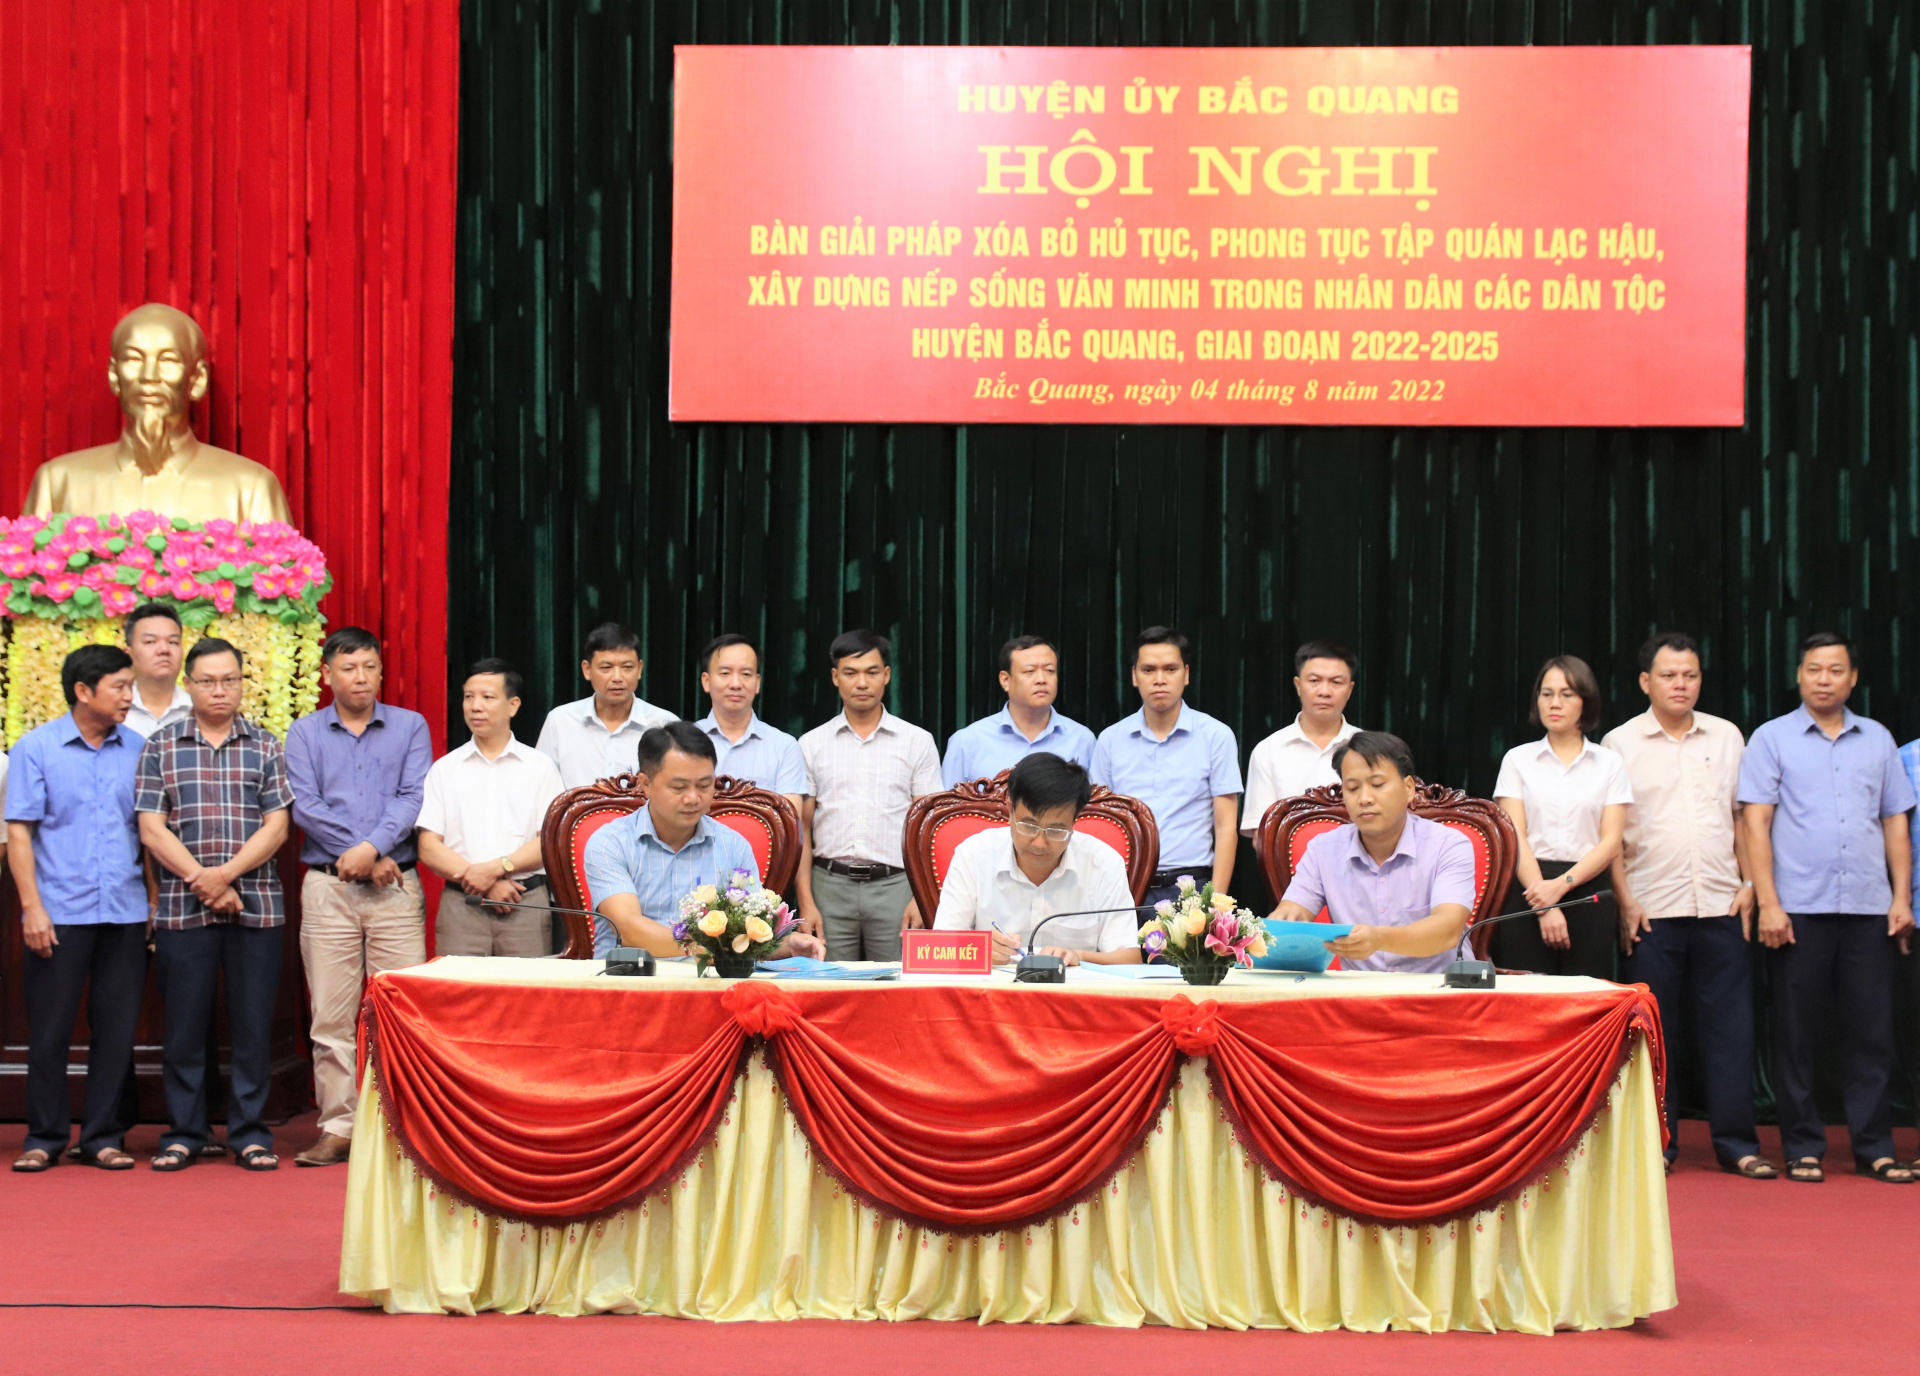 Chủ tịch UBND các xã, thị trấn ký cam kết với Chủ tịch UBND huyện về gương mẫu xóa bỏ hủ tục, phong tục tập quán lạc hậu, xây dựng nếp sống văn minh trong nhân dân các dân tộc huyện Bắc Quang, giai đoạn 2022 – 2025.